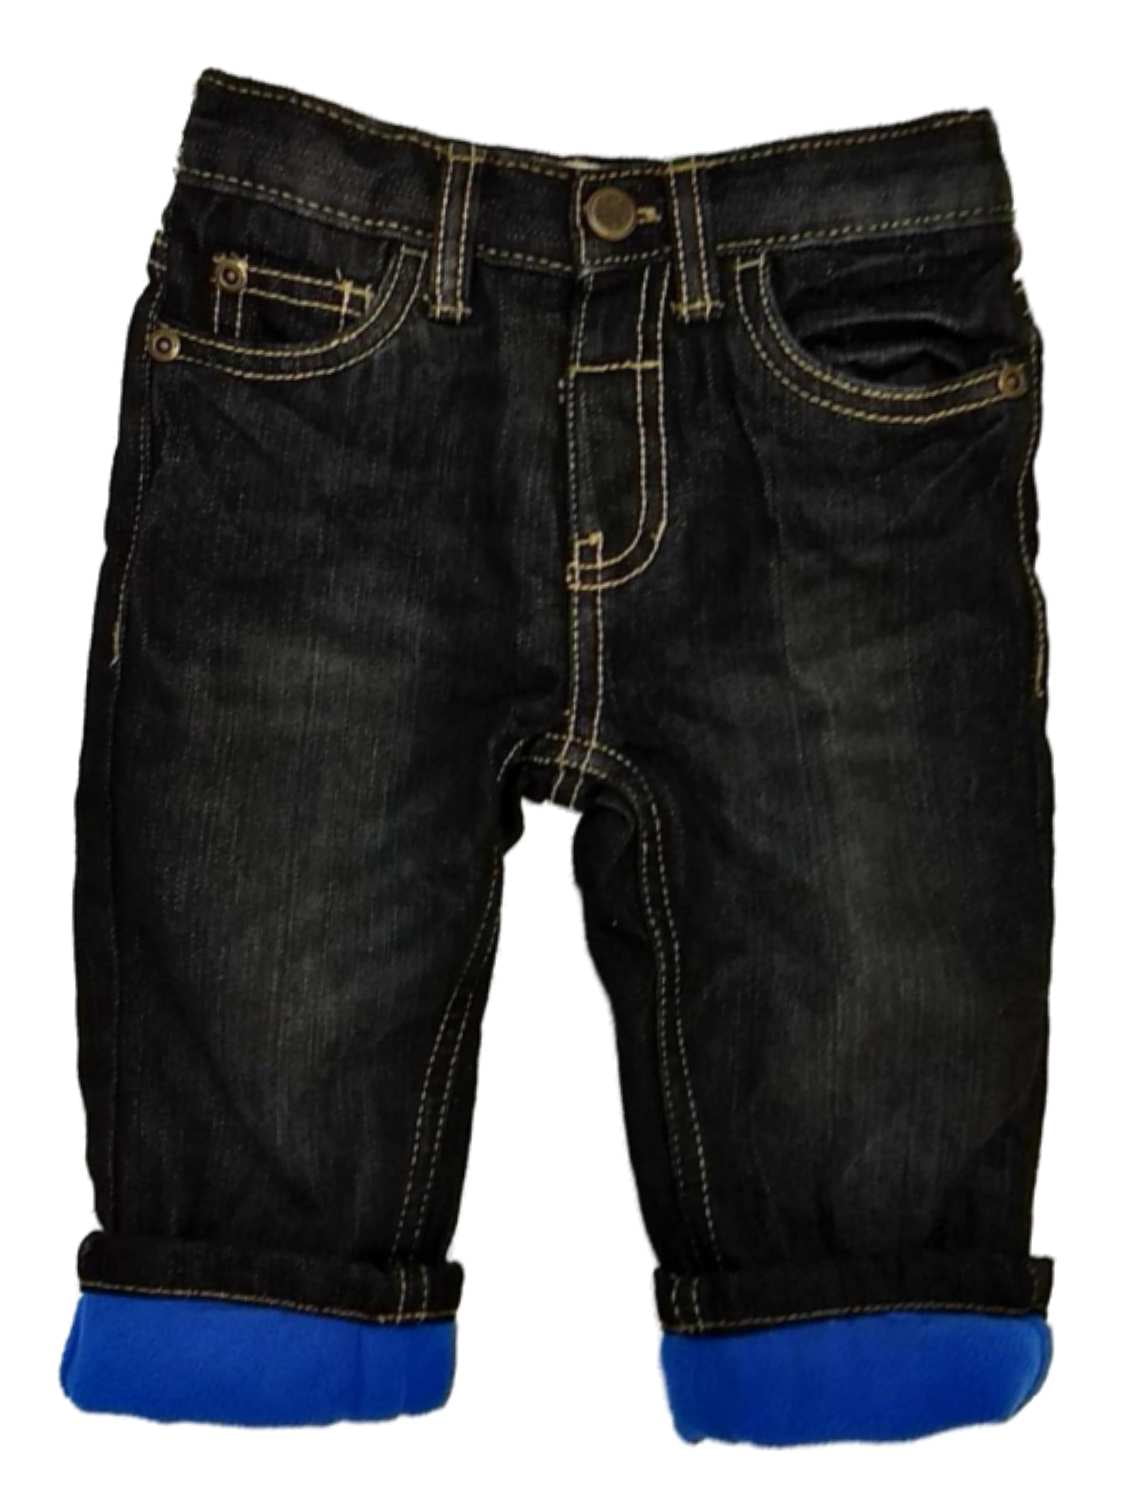 children's fleece lined jeans